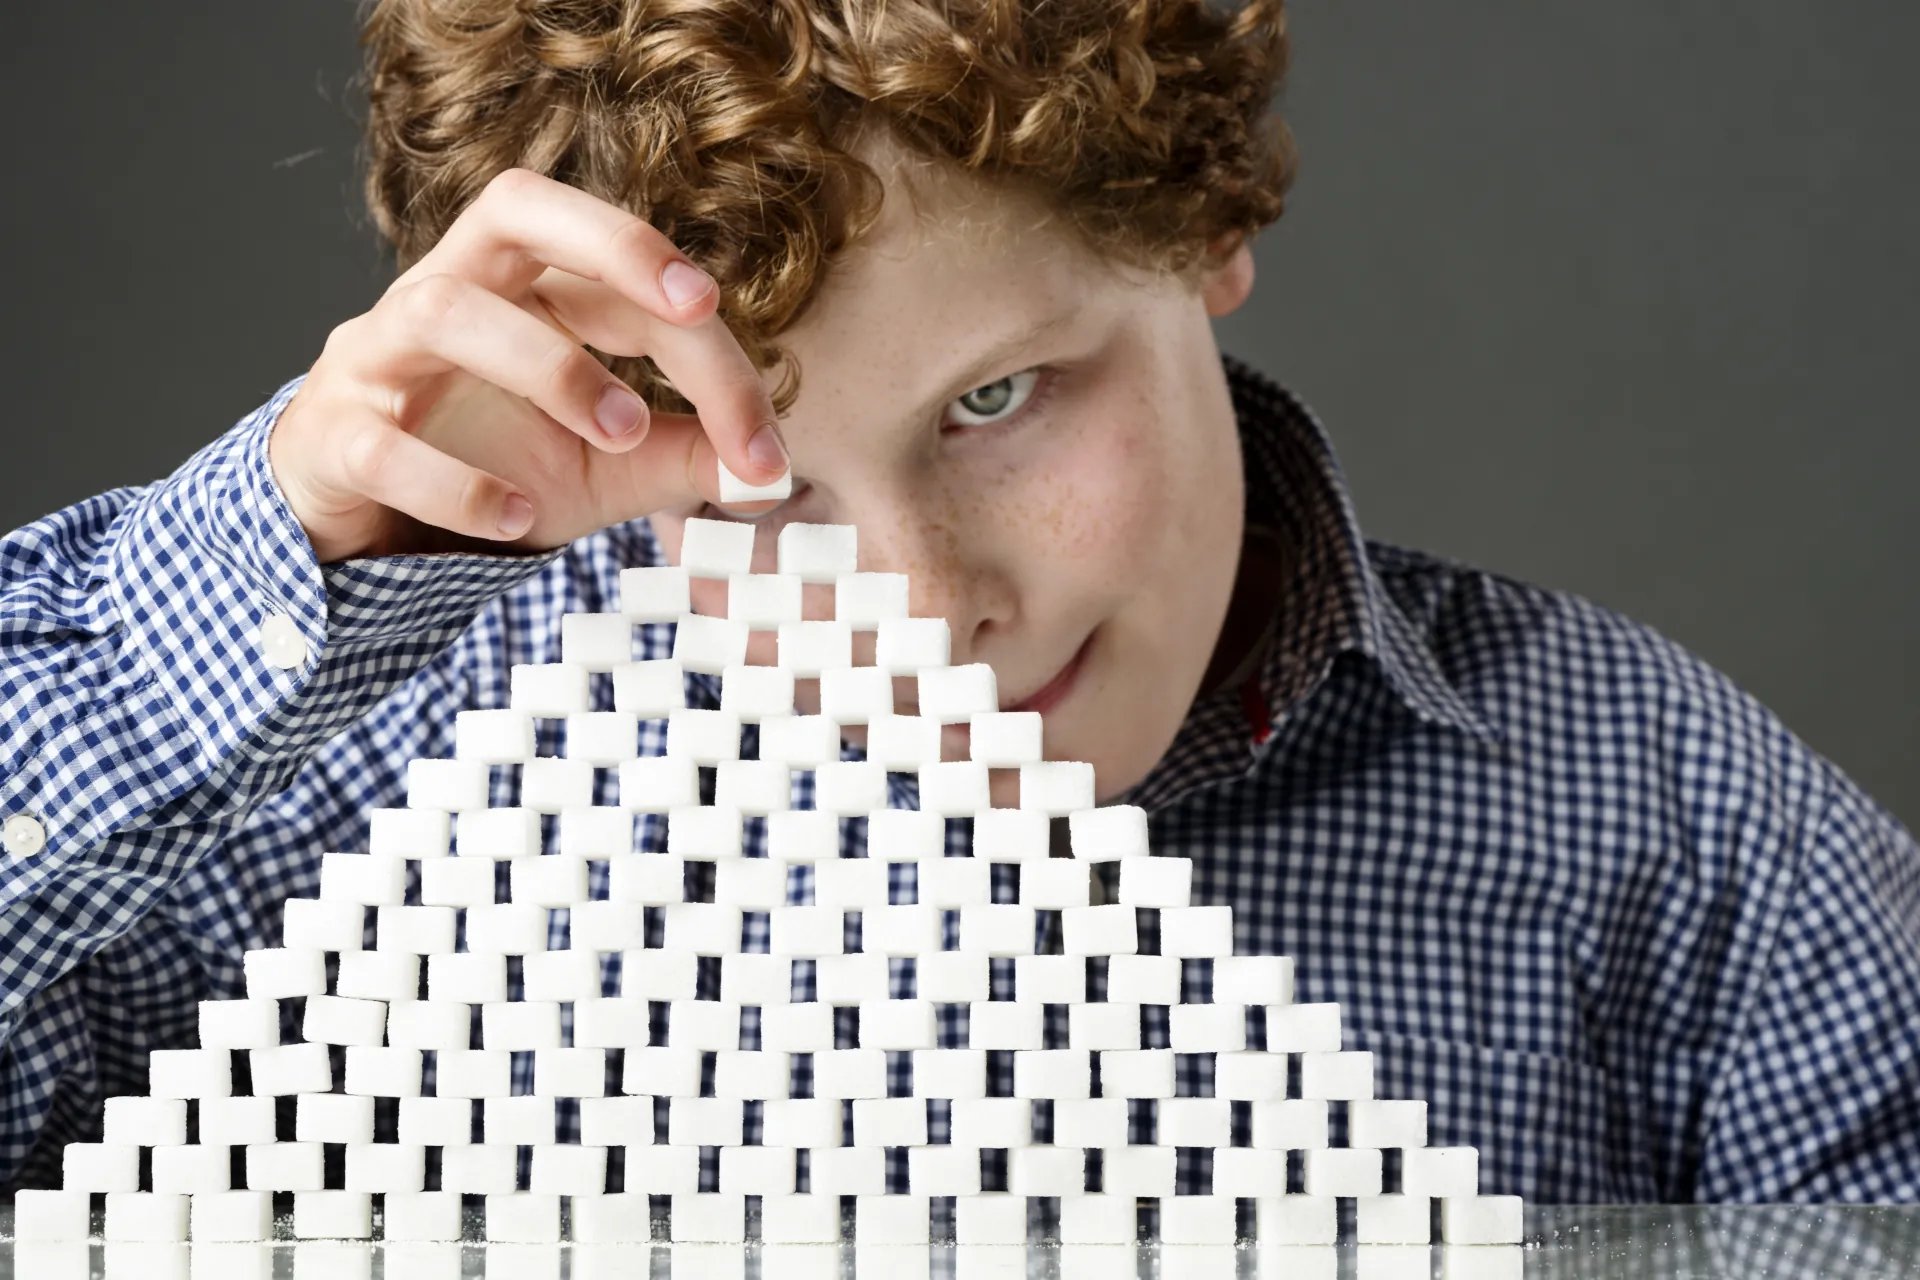 Überall steckt Zucker drin: Ein Junge baut eine Pyramide aus Zuckerwürfeln, die die Menge seines tägichen Zuckerkonsums darstellt.